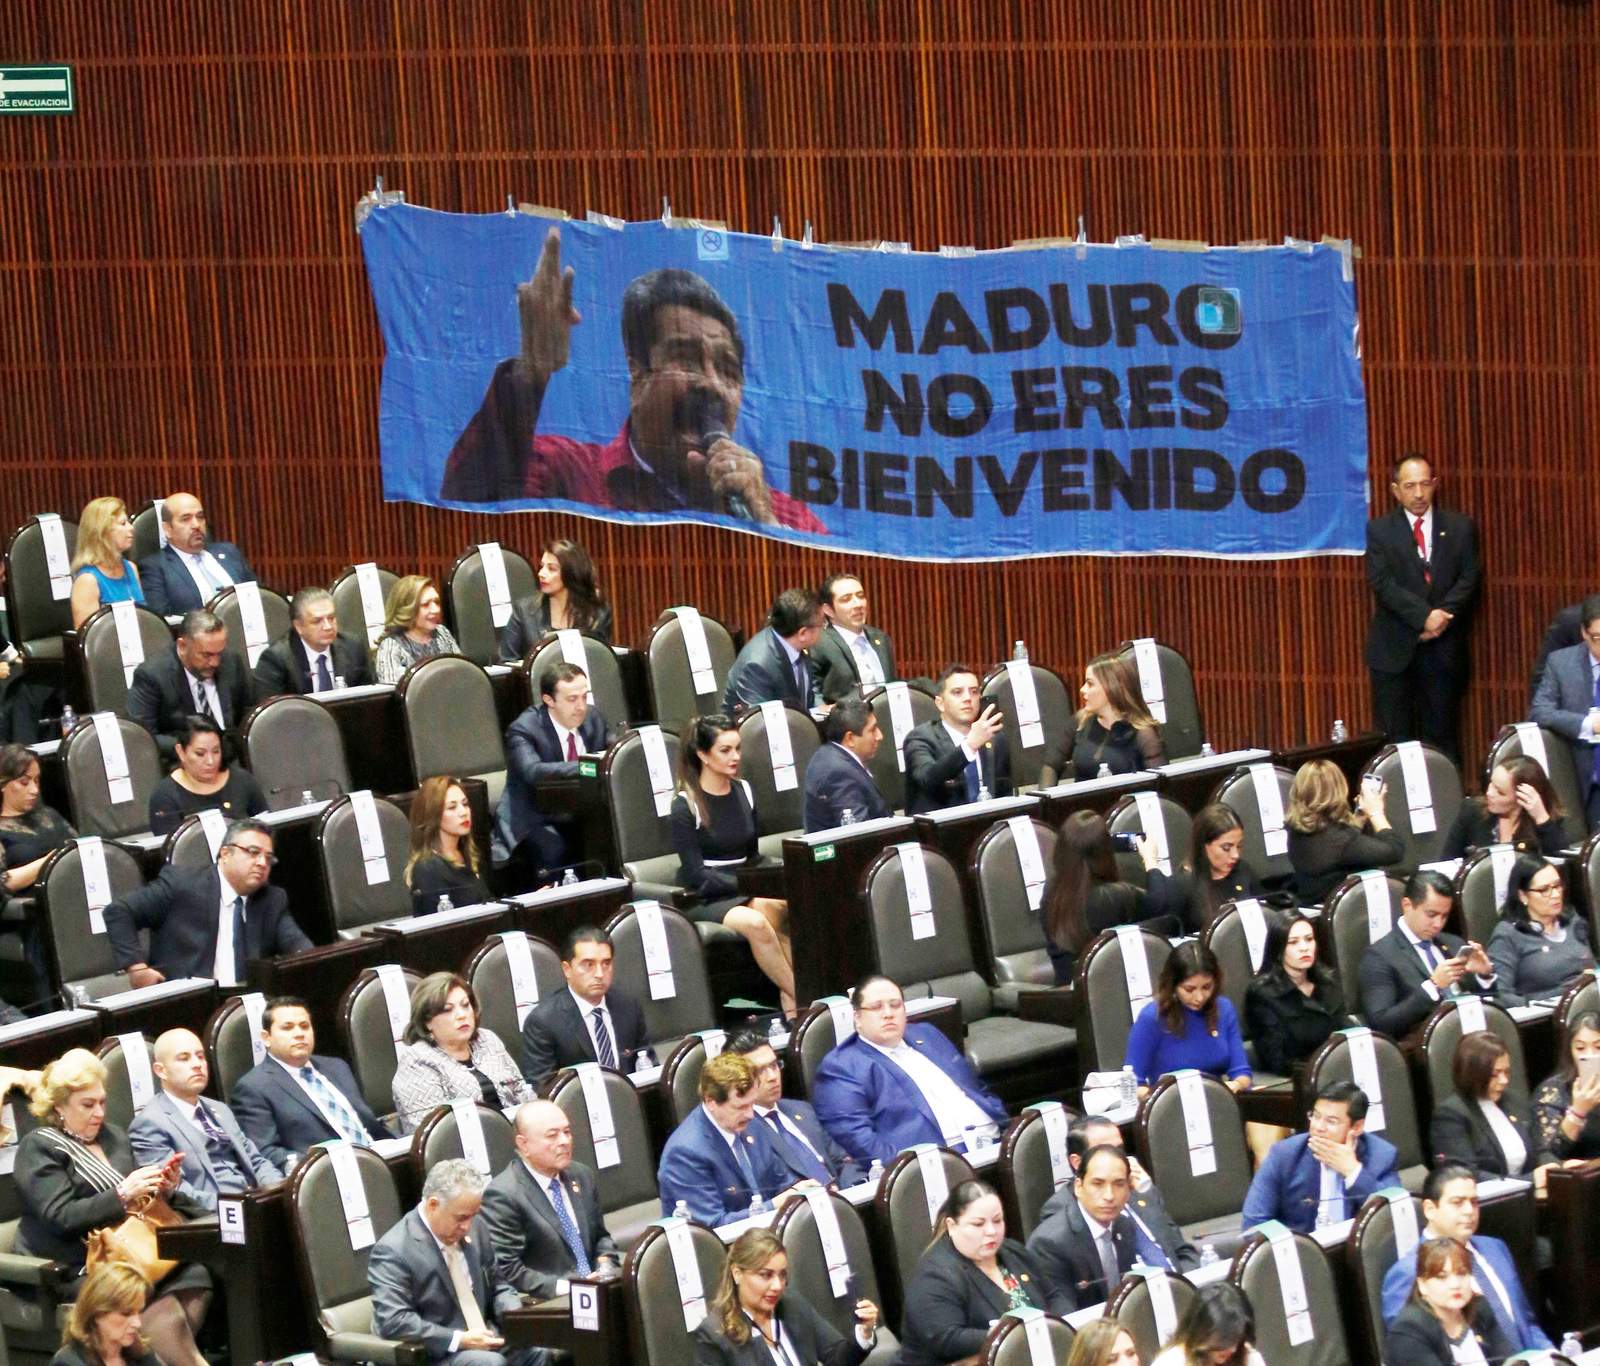 Un honor que la derecha me ataque: Maduro tras visita a México